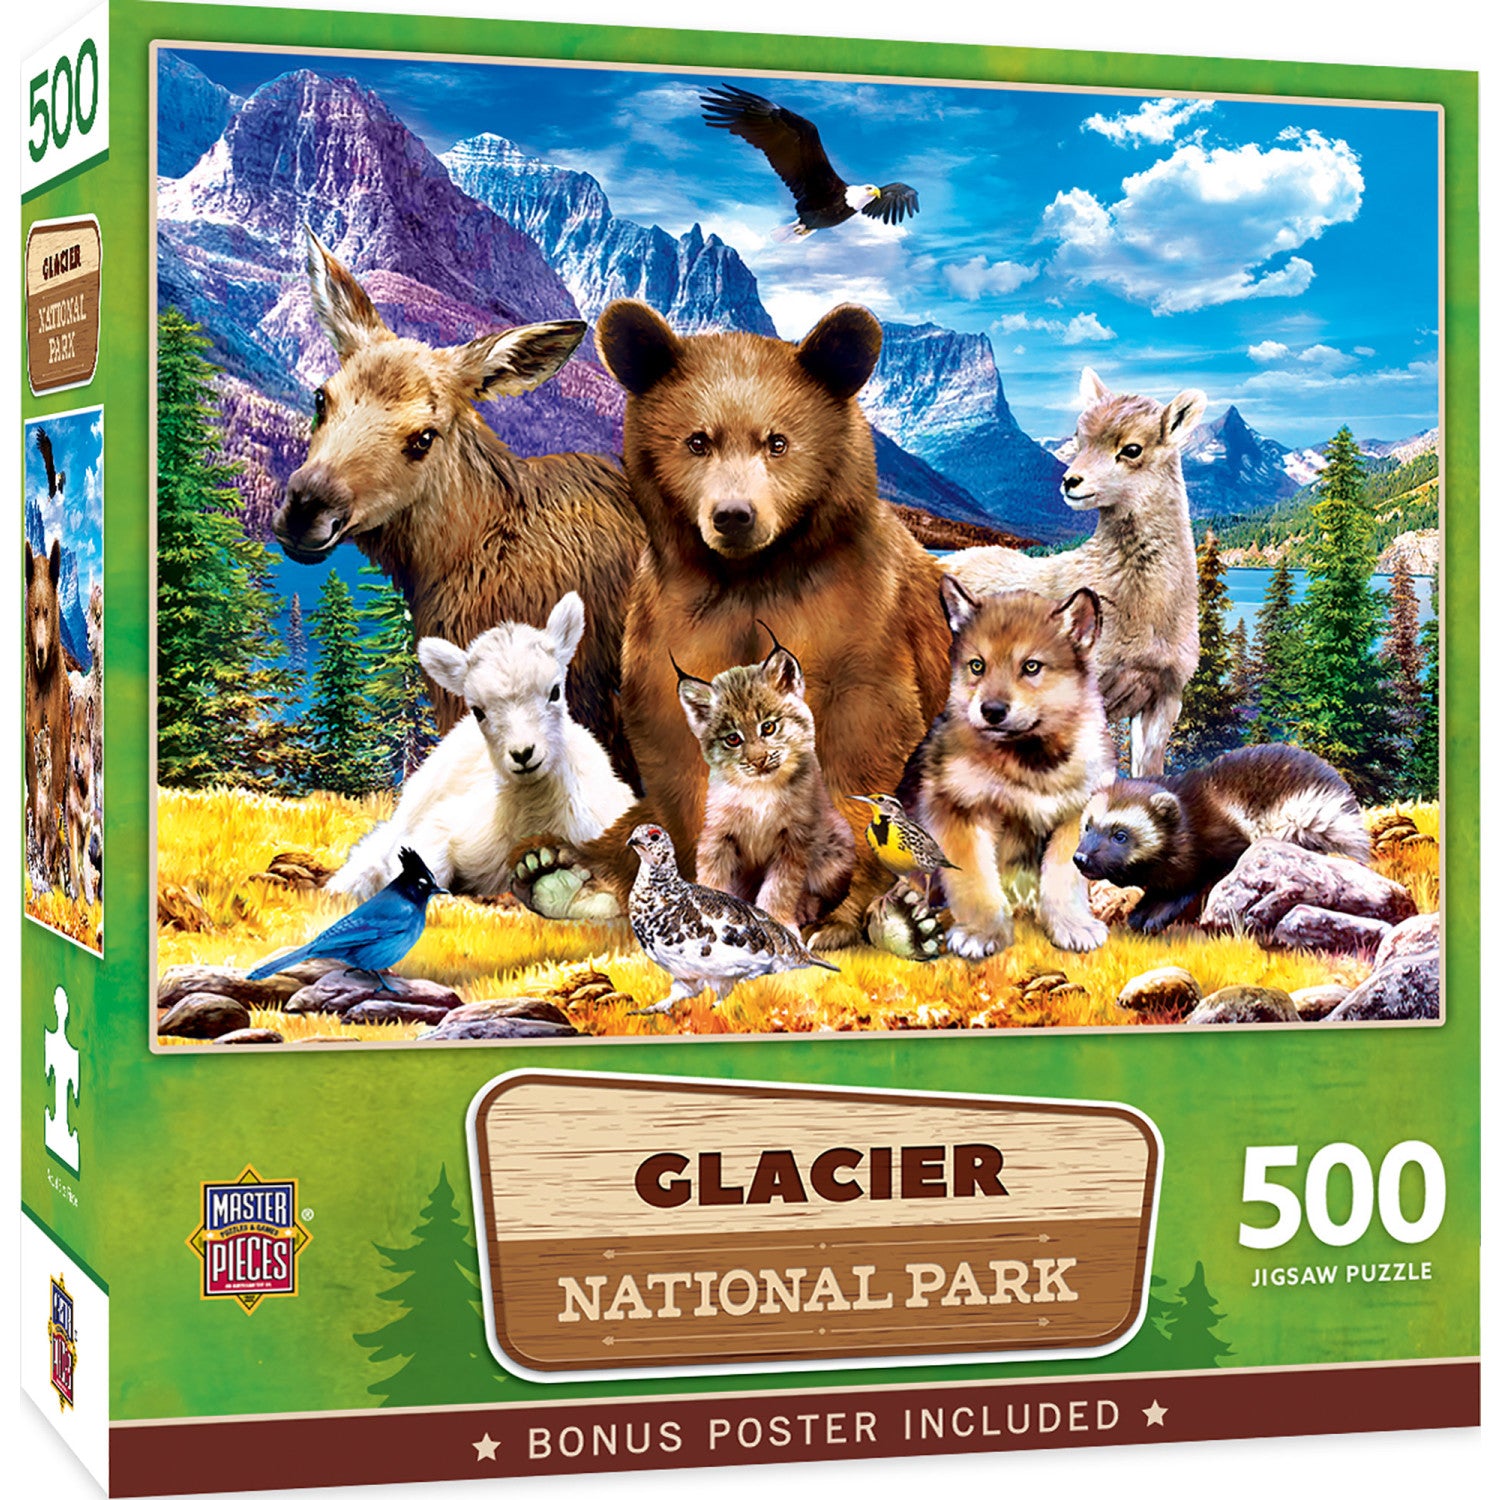 Glacier National Park 500 Piece Puzzle